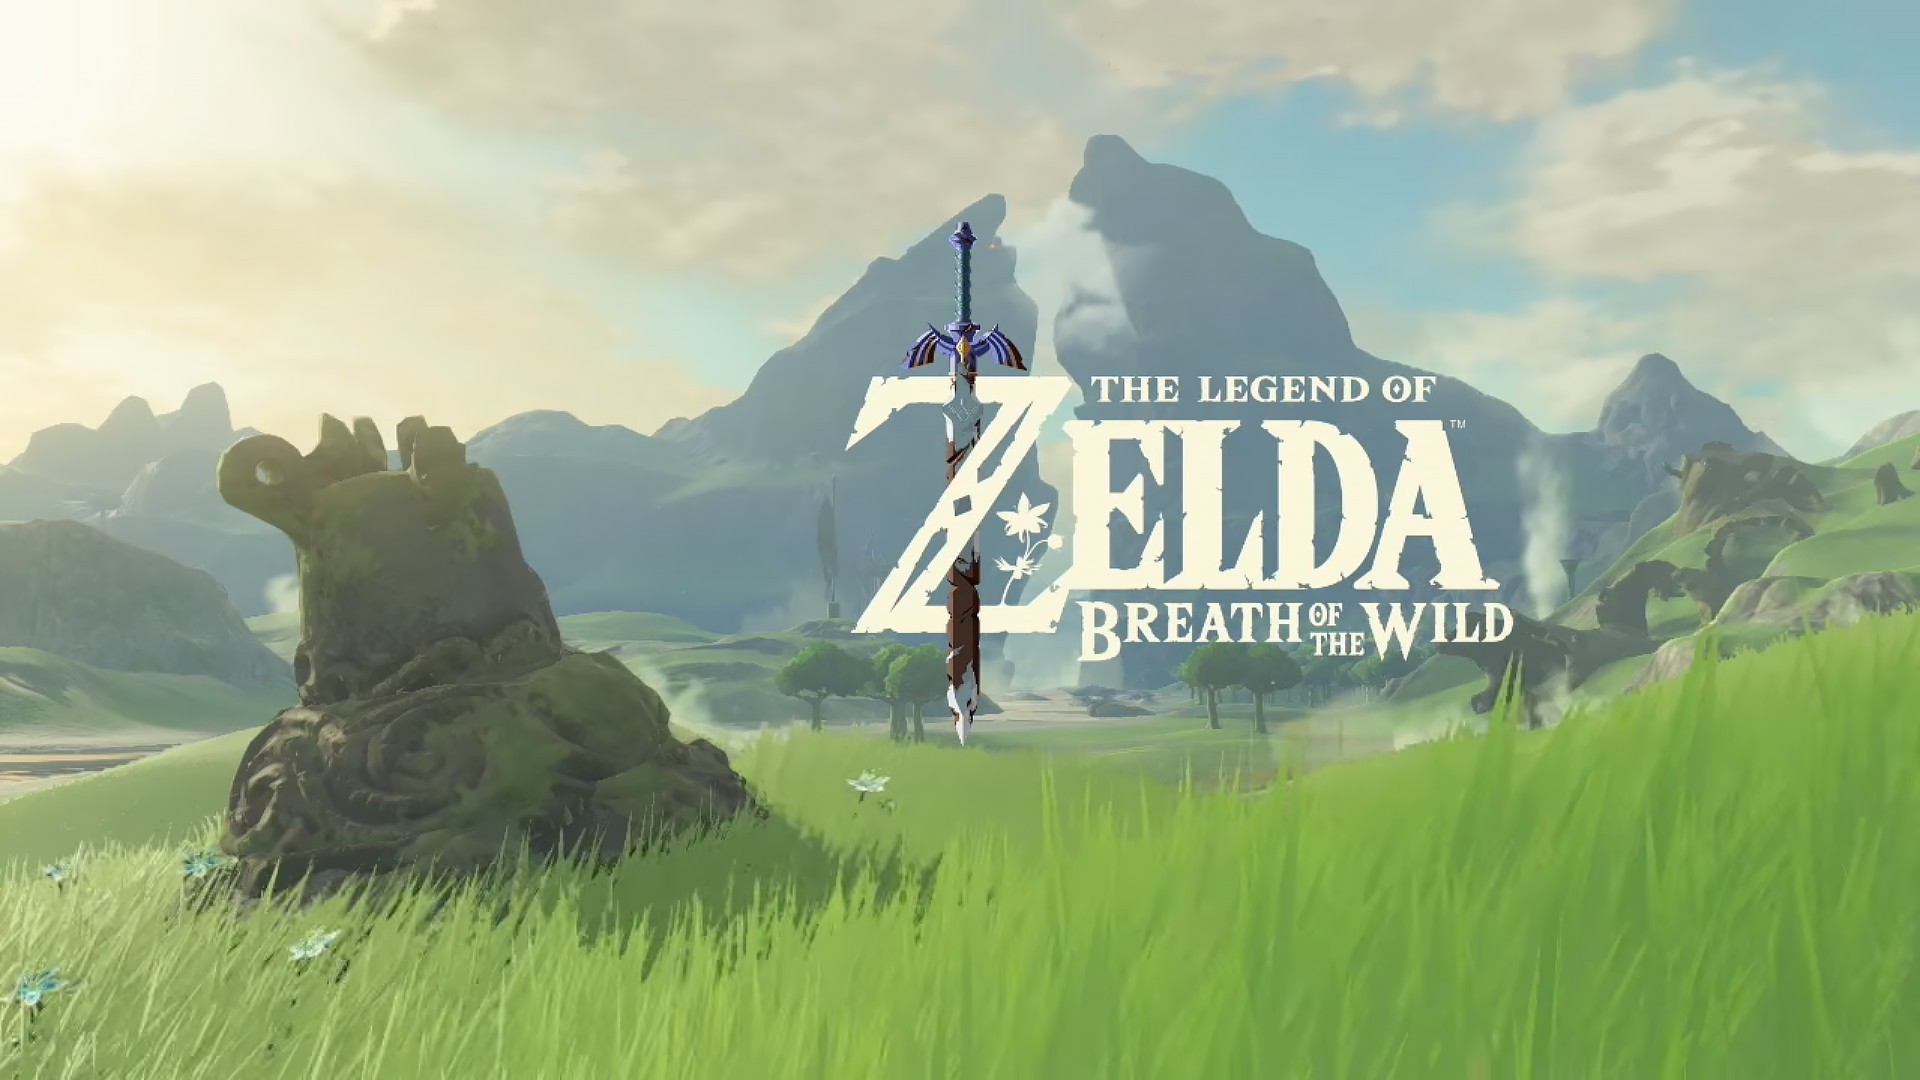 The Legend Of Zelda The Legend Of Zelda Breath Of The Wild Video Games Fantasy Art Master Sword 1920x1080